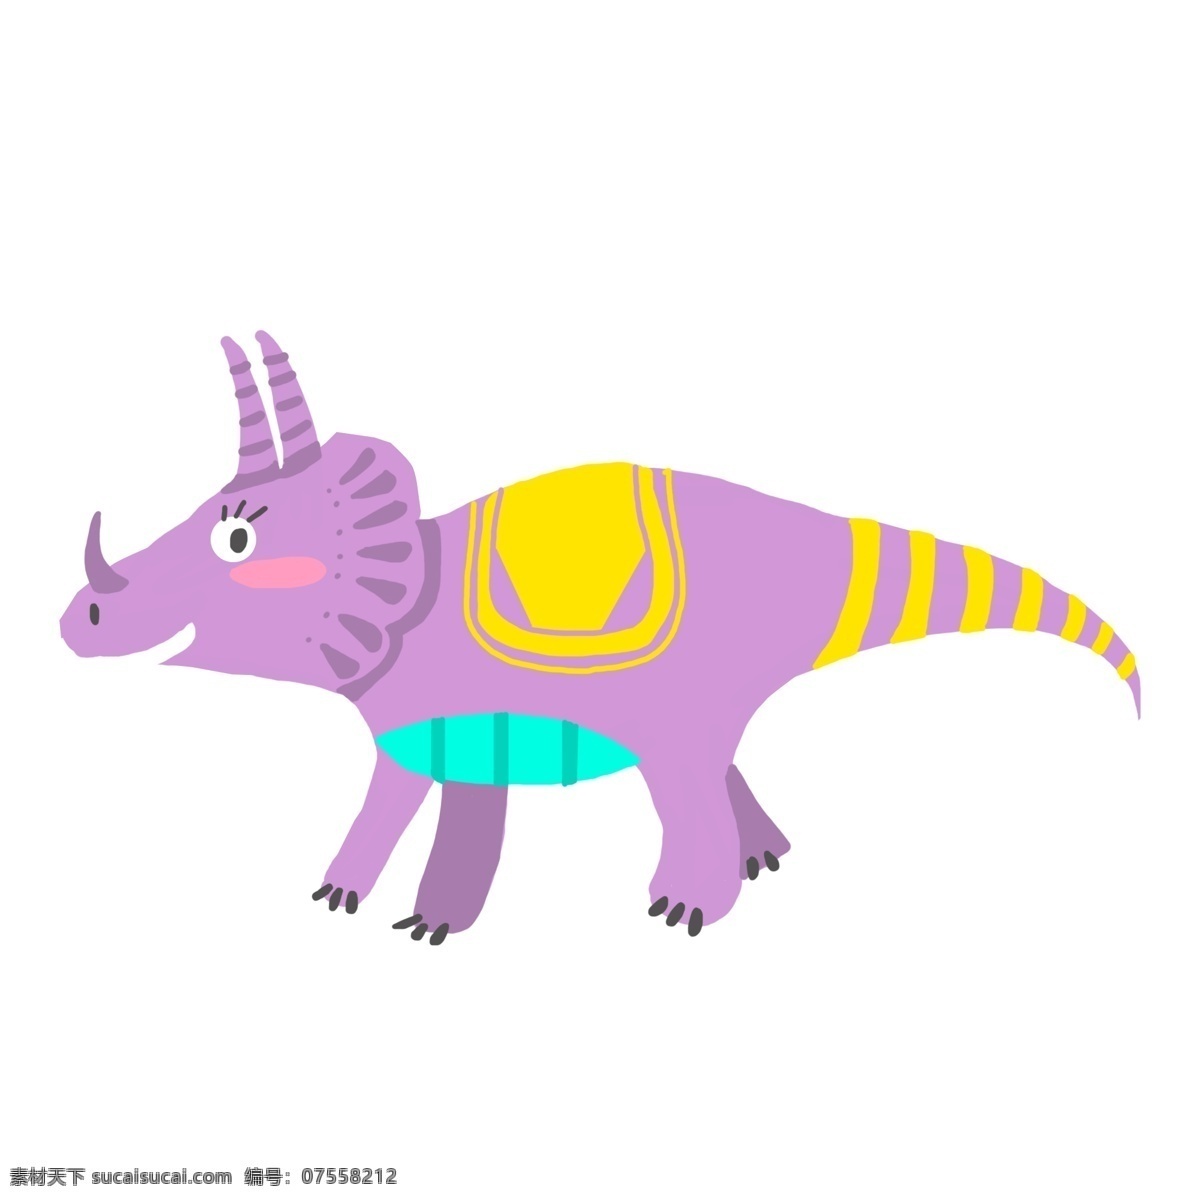 紫色 恐龙 装饰 插画 紫色的恐龙 可爱的恐龙 漂亮的恐龙 创意恐龙 恐龙装饰 恐龙插画 立体恐龙